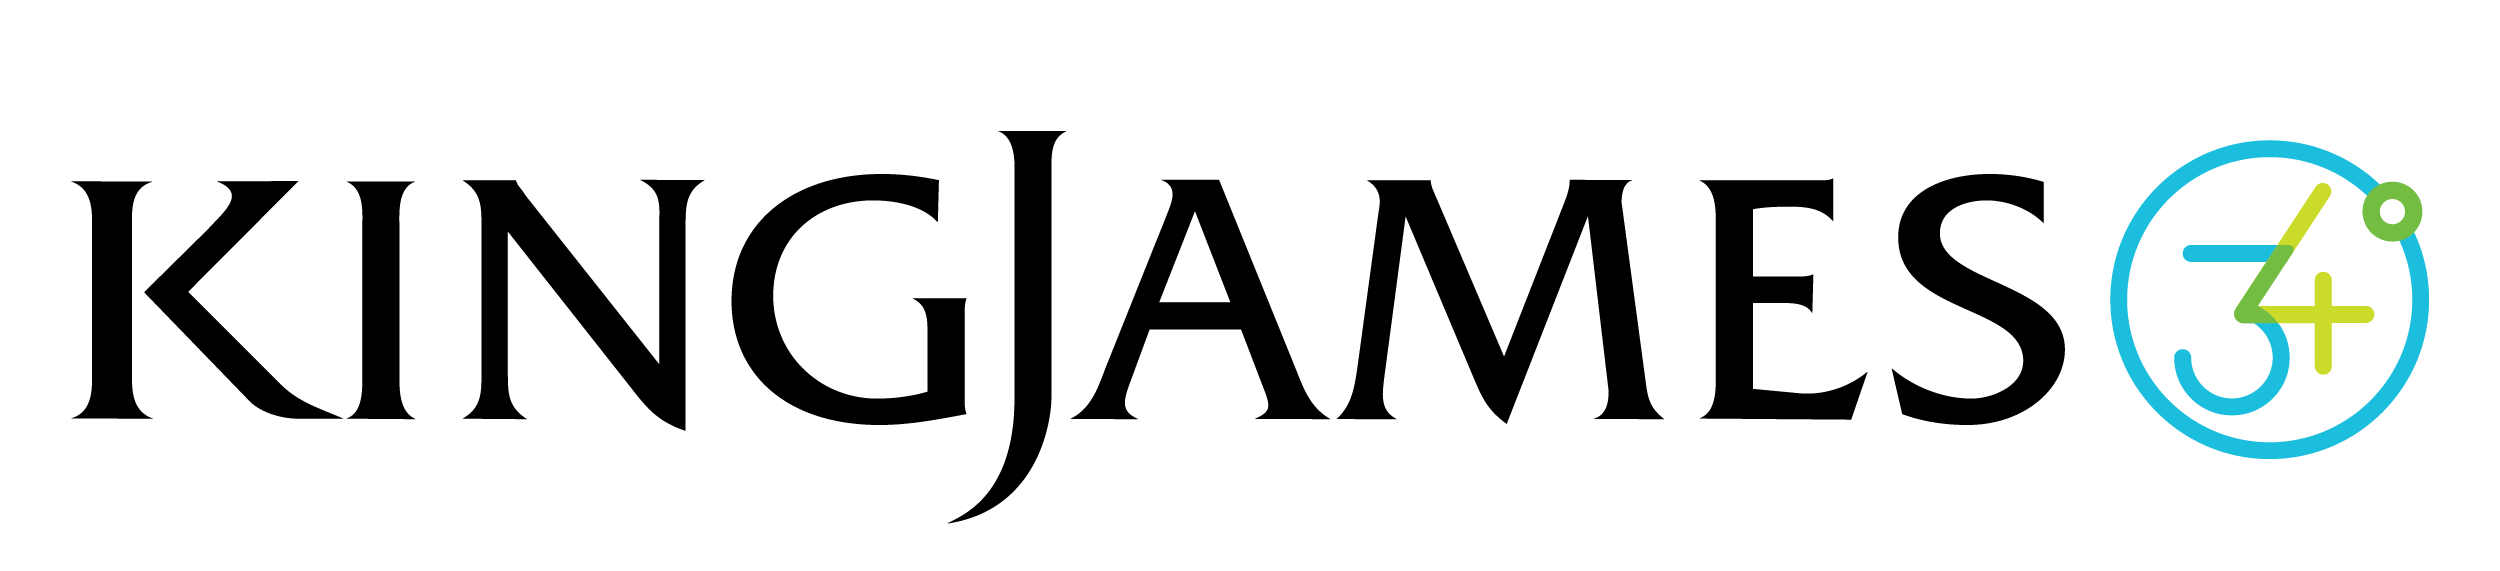 King James 34 logo lock-up.png